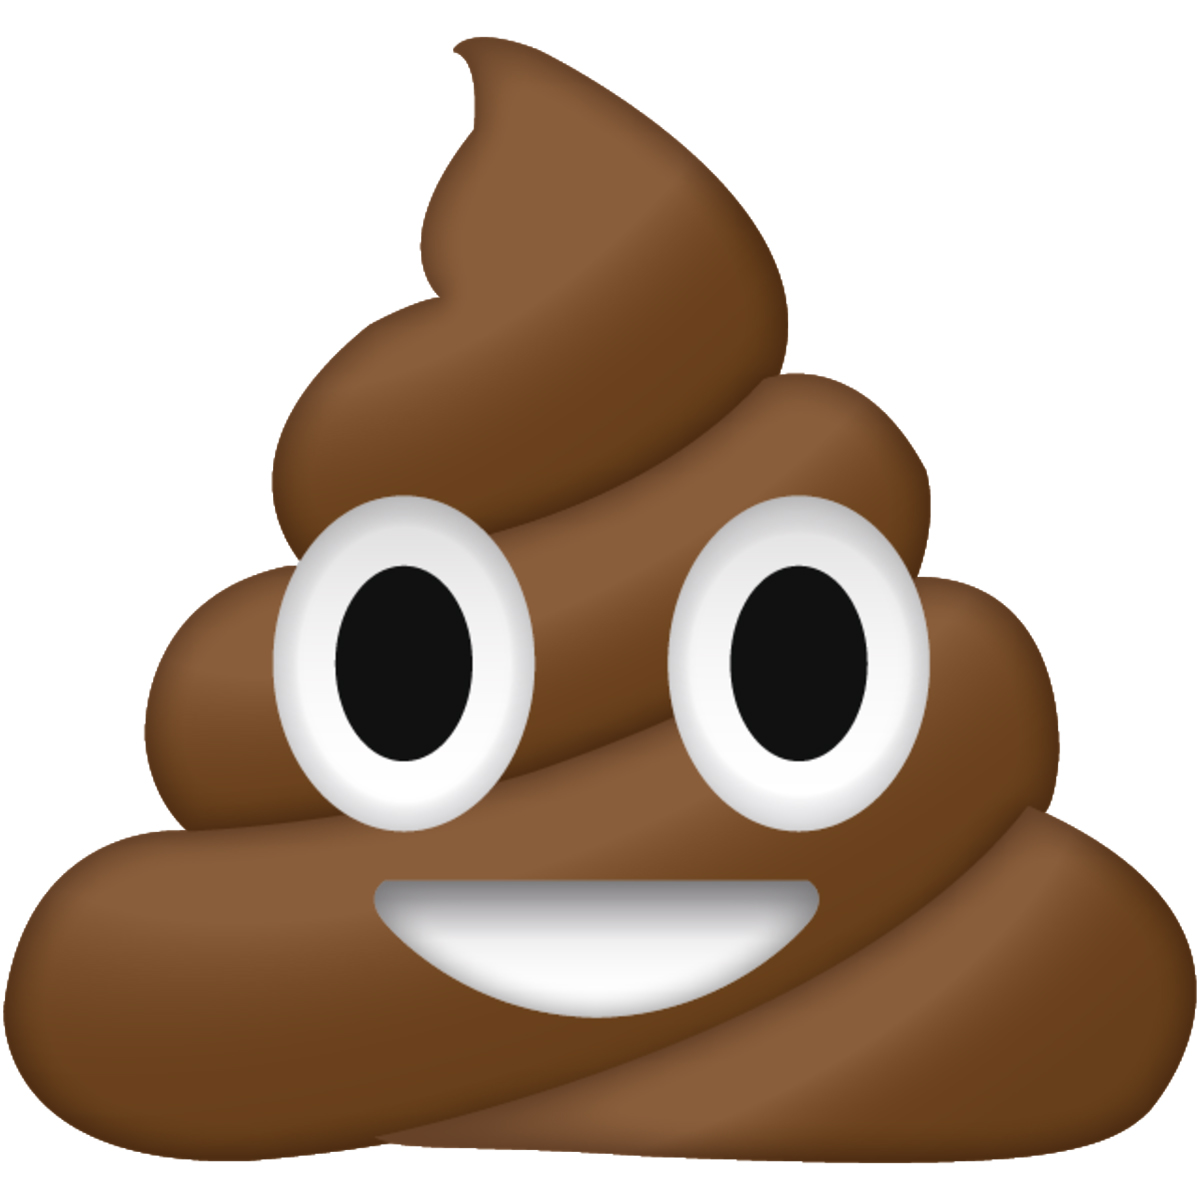 Poop Emoji Blank Meme Template